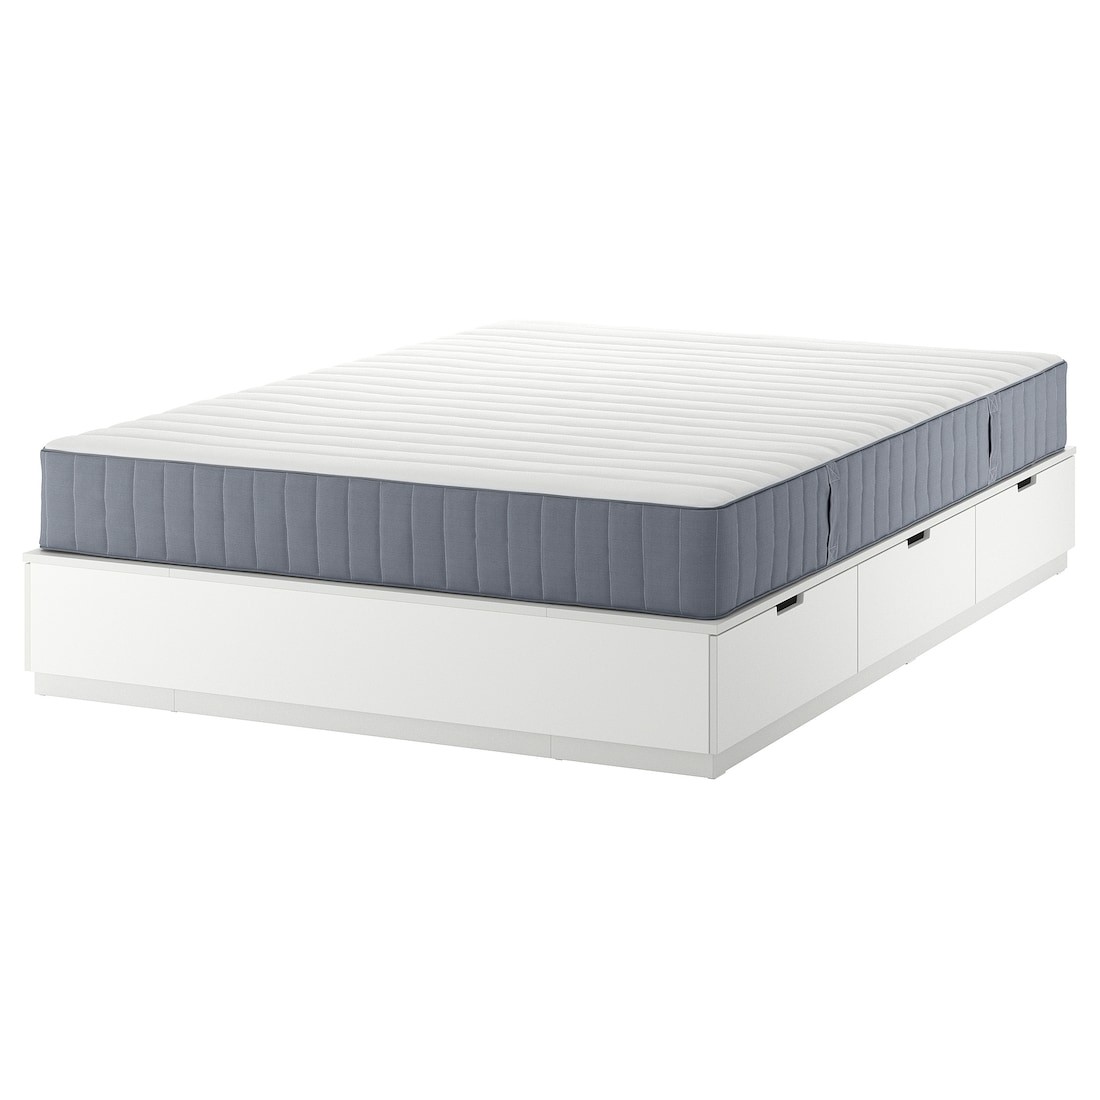 NORDLI Кровать с контейнером и матрасом, белый / Valevåg жесткий, 160x200 см